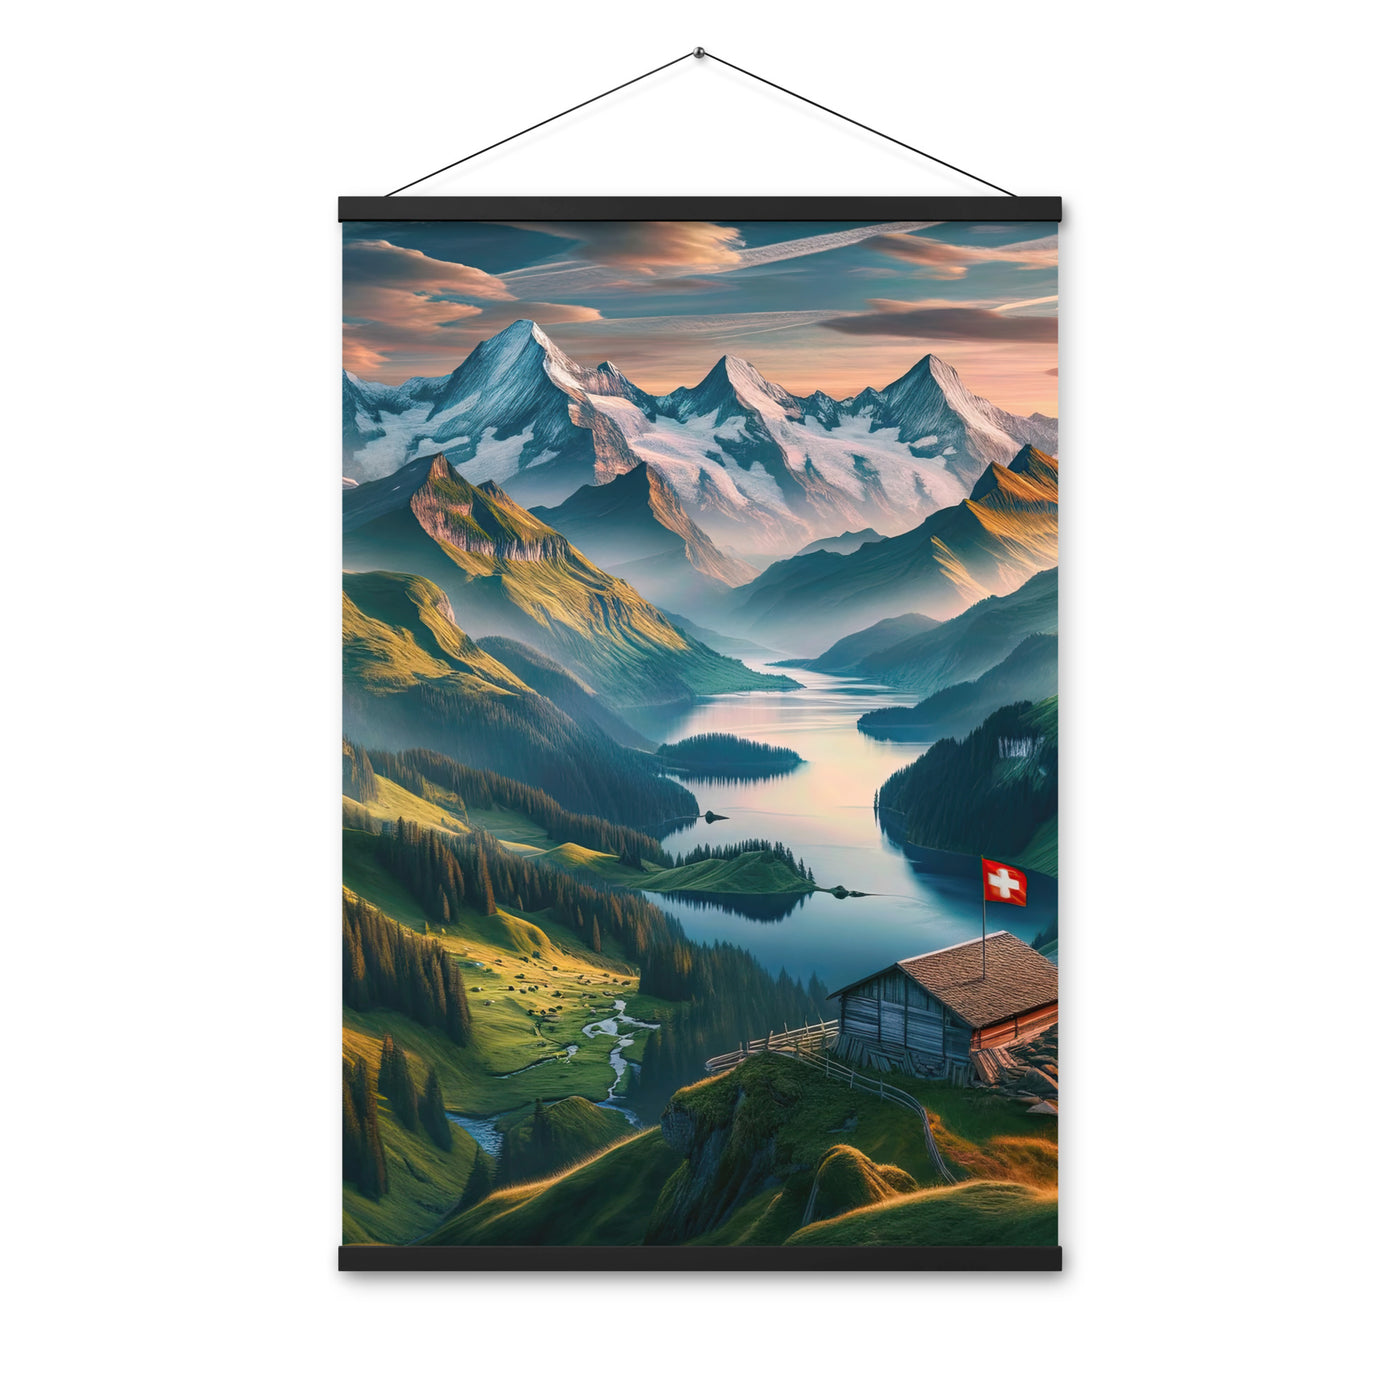 Schweizer Flagge, Alpenidylle: Dämmerlicht, epische Berge und stille Gewässer - Premium Poster mit Aufhängung berge xxx yyy zzz 61 x 91.4 cm